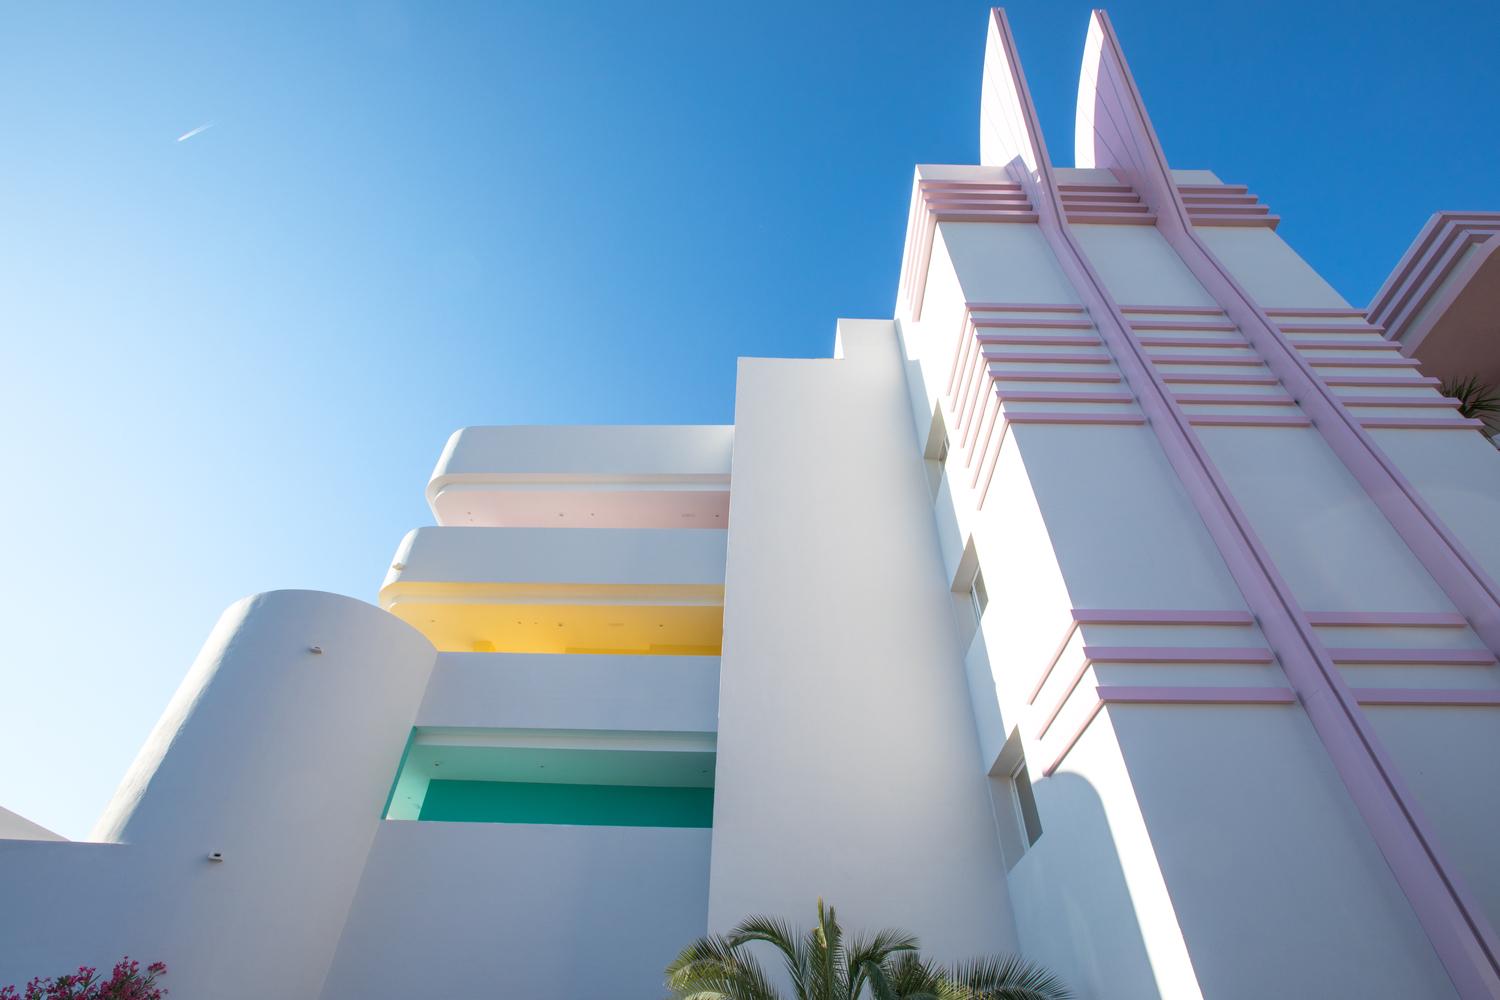 【西班牙新穎酒店】以邁阿密海灘為靈感 創造出夢幻度假天堂